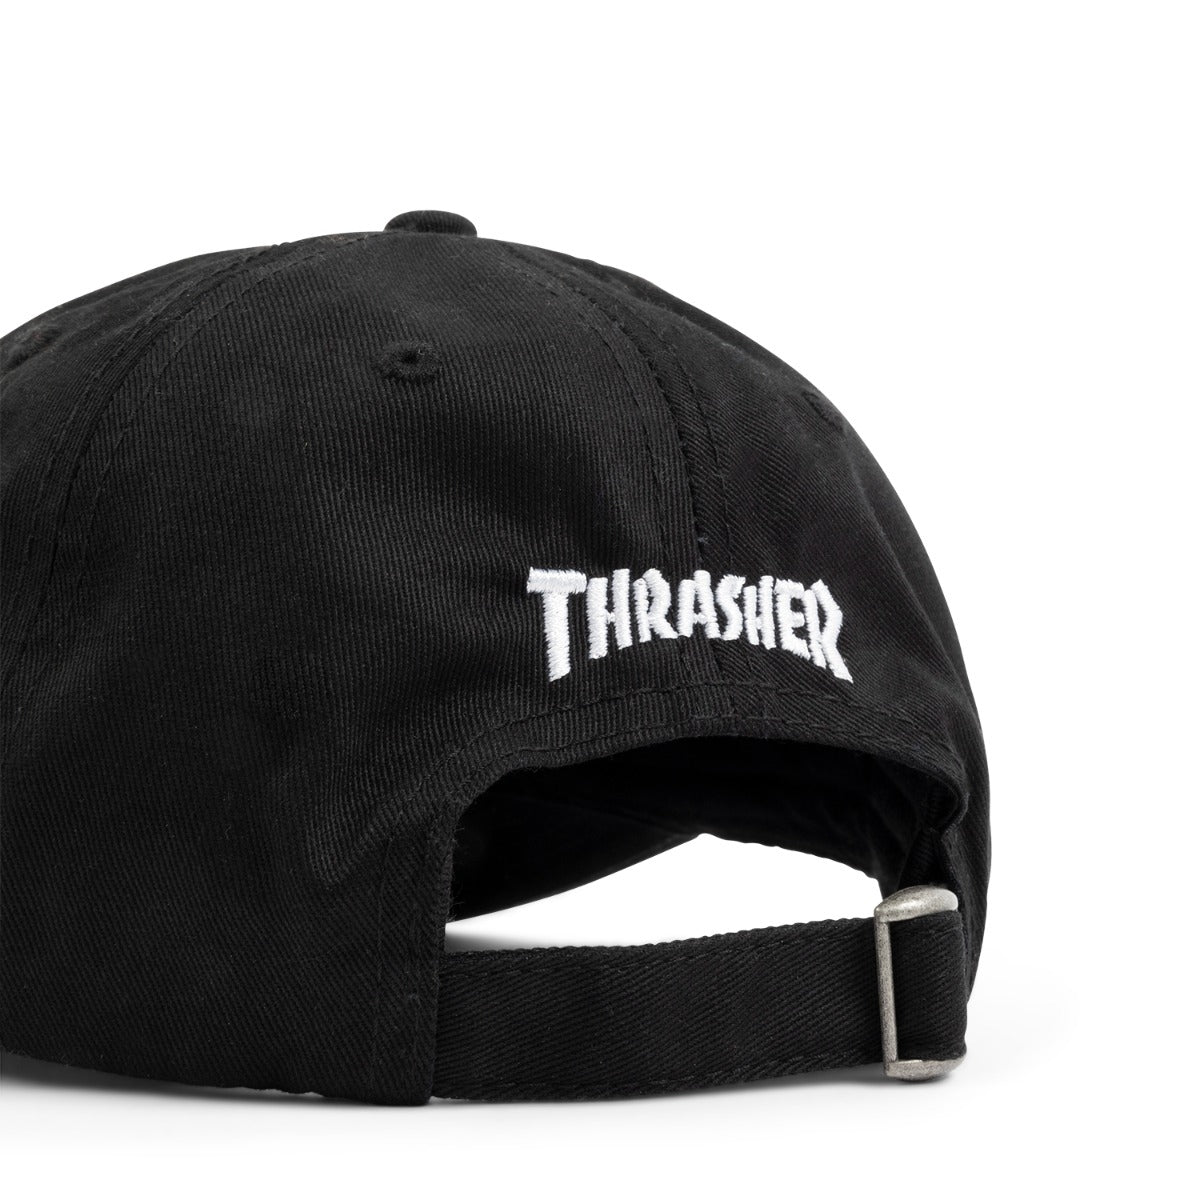 THRASHER - SKATE GOAT REDUX OLD TIMER CAP - BLACK